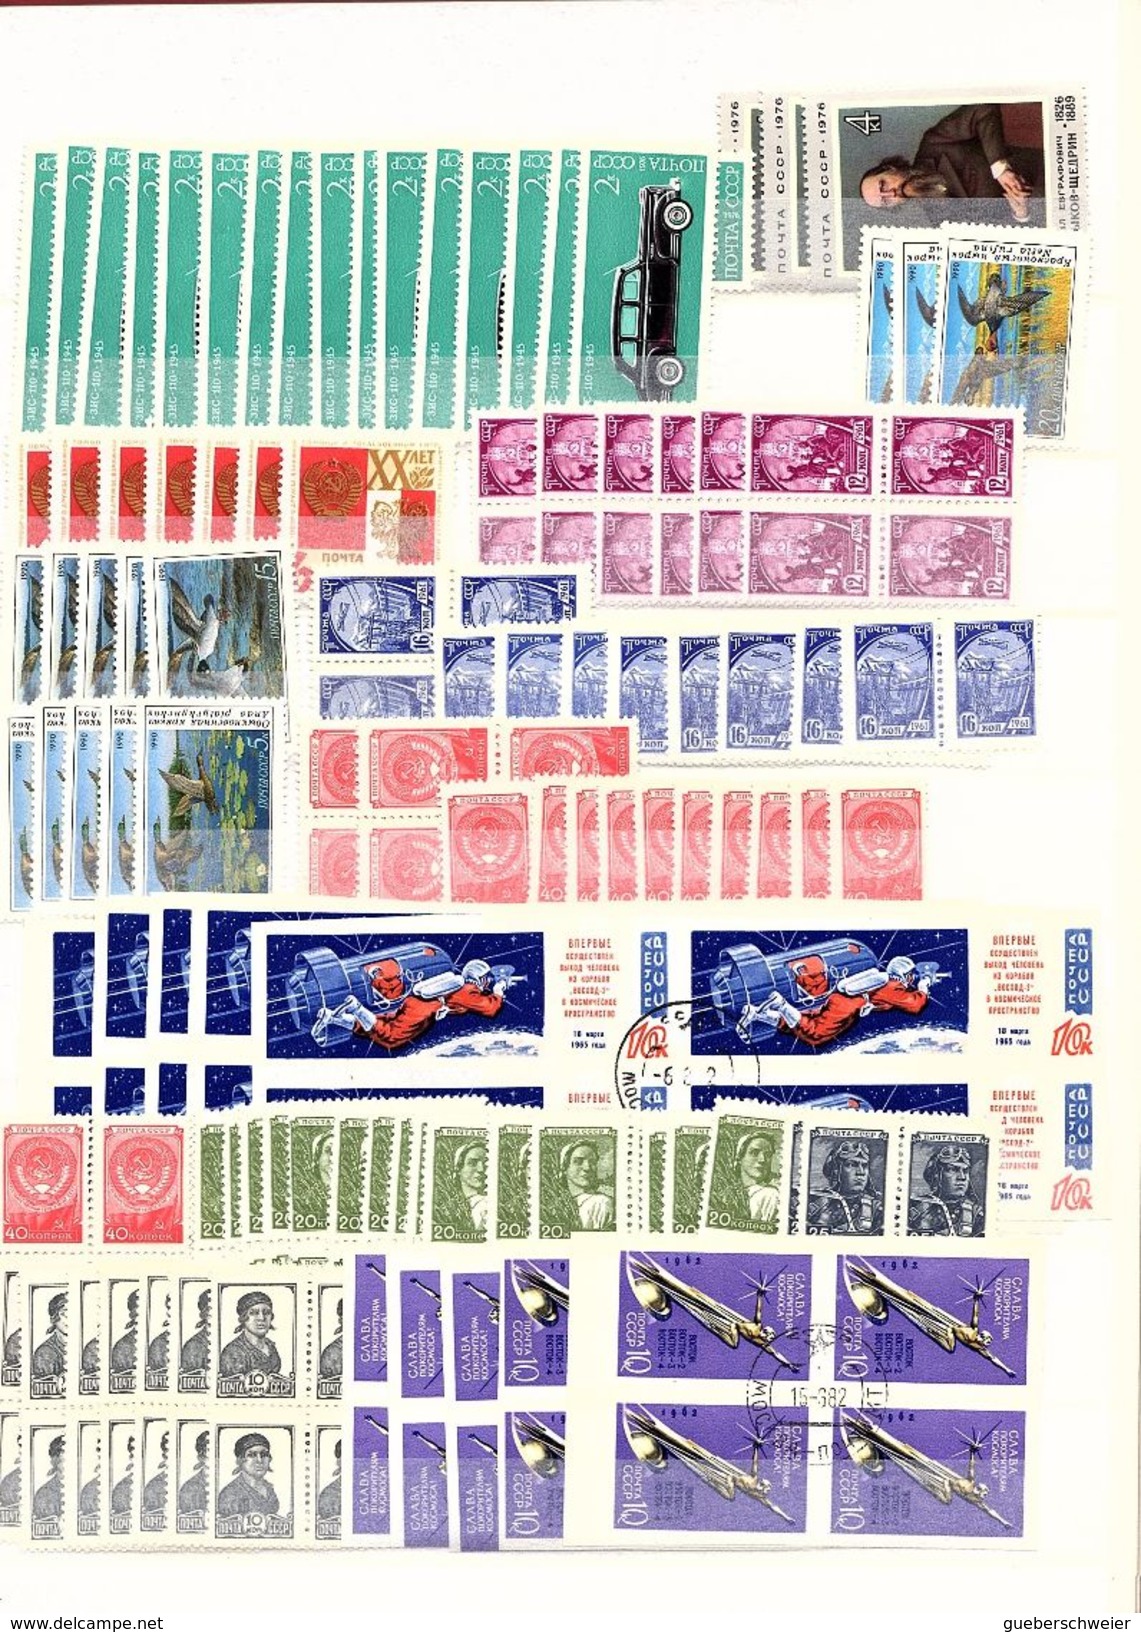 RUSSIE stock important env. de 2700 timbres neufs** en majorité et quelques obl.. et non dentelés côte env. 2.500 €